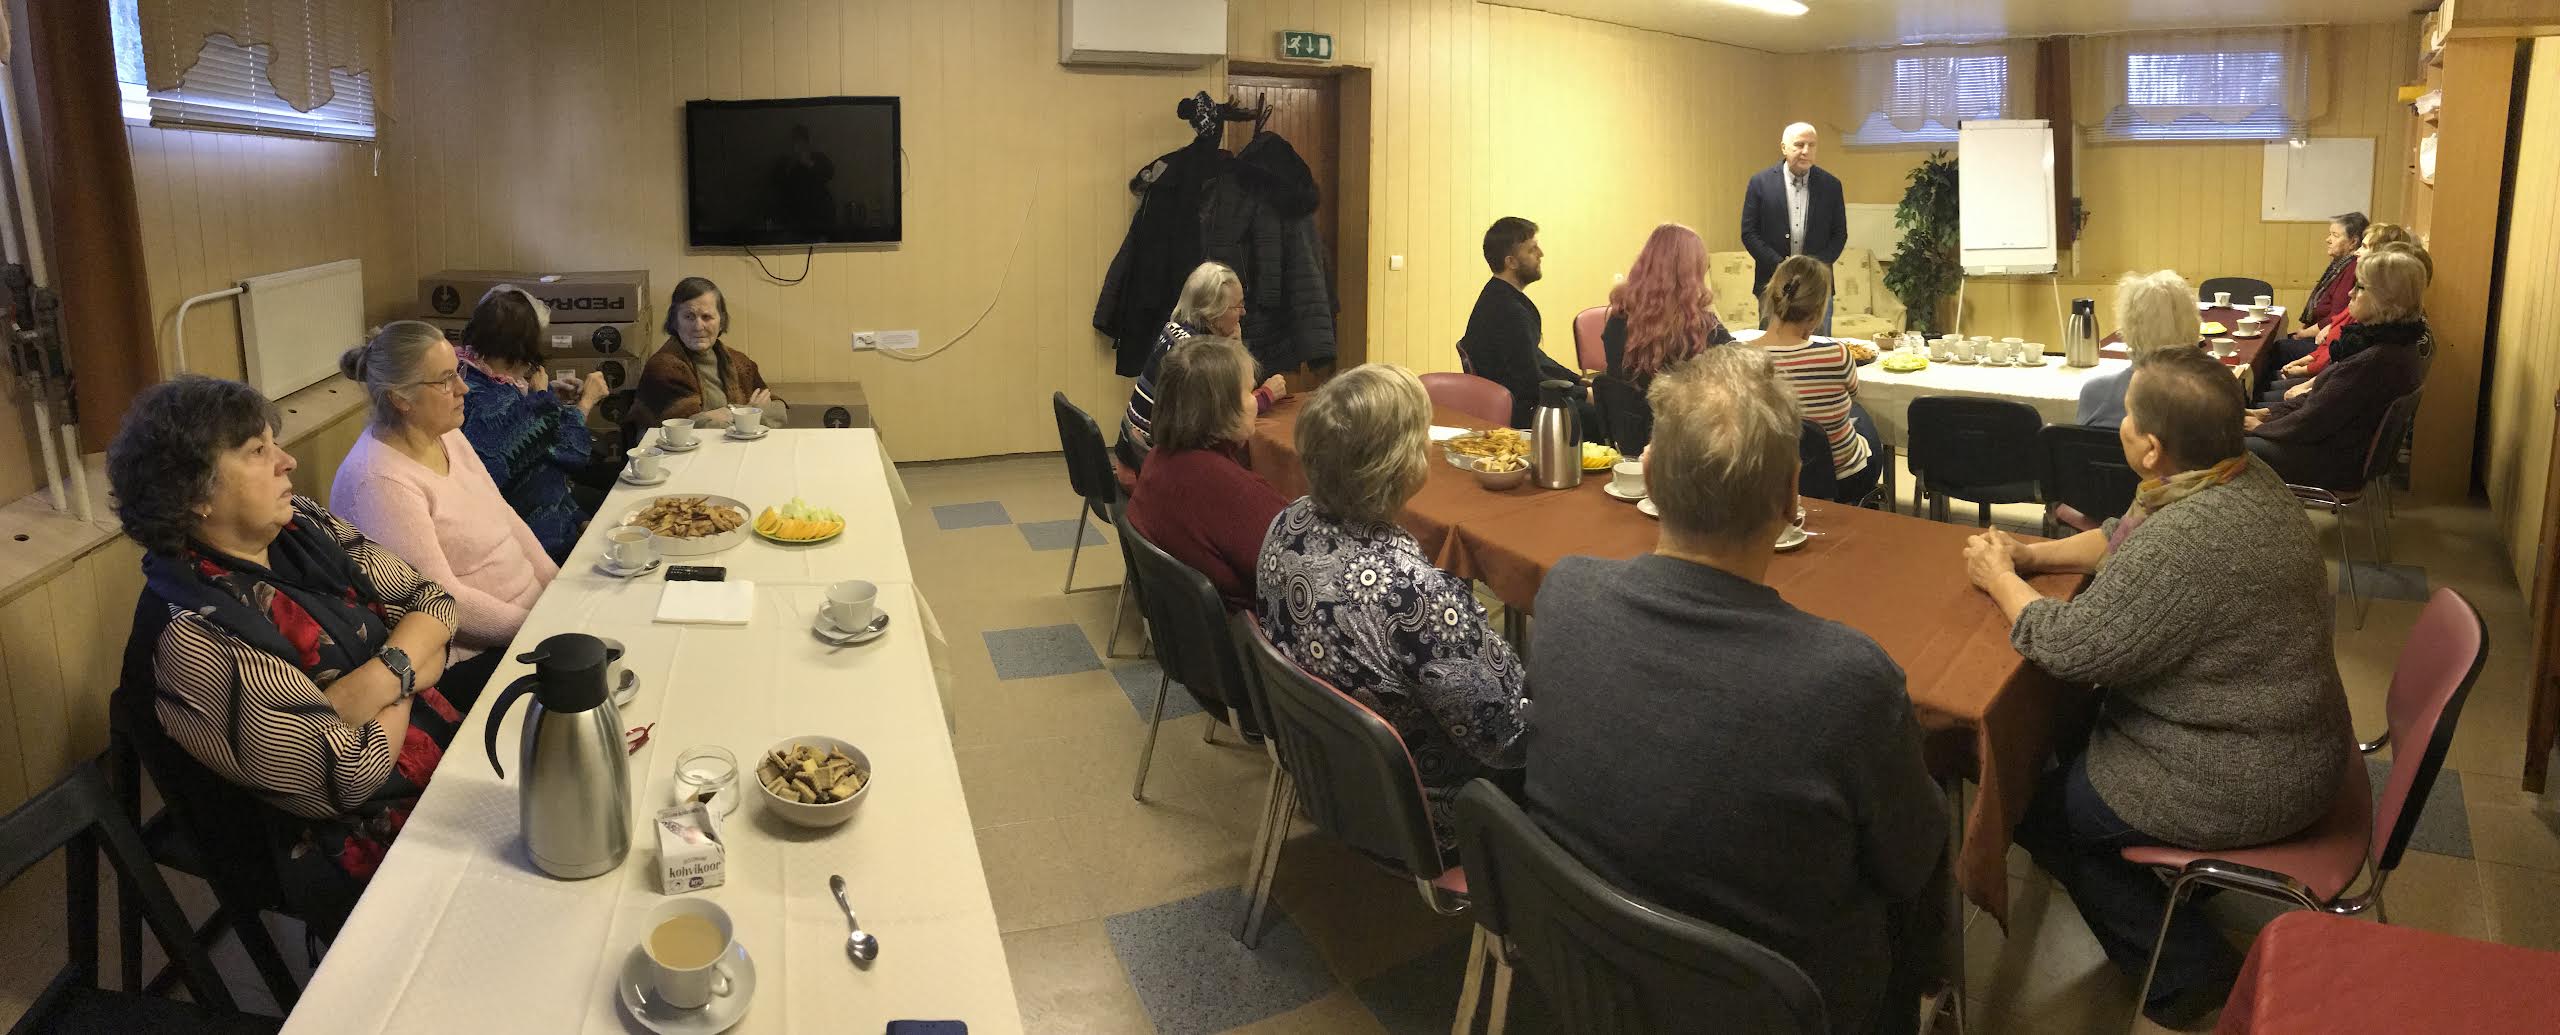 Neljapäevasele kohtumisele Kanariku 7 soklikorrusel saabus 16 eakat Parksepast ja Väimelast. Foto: ERAKOGU